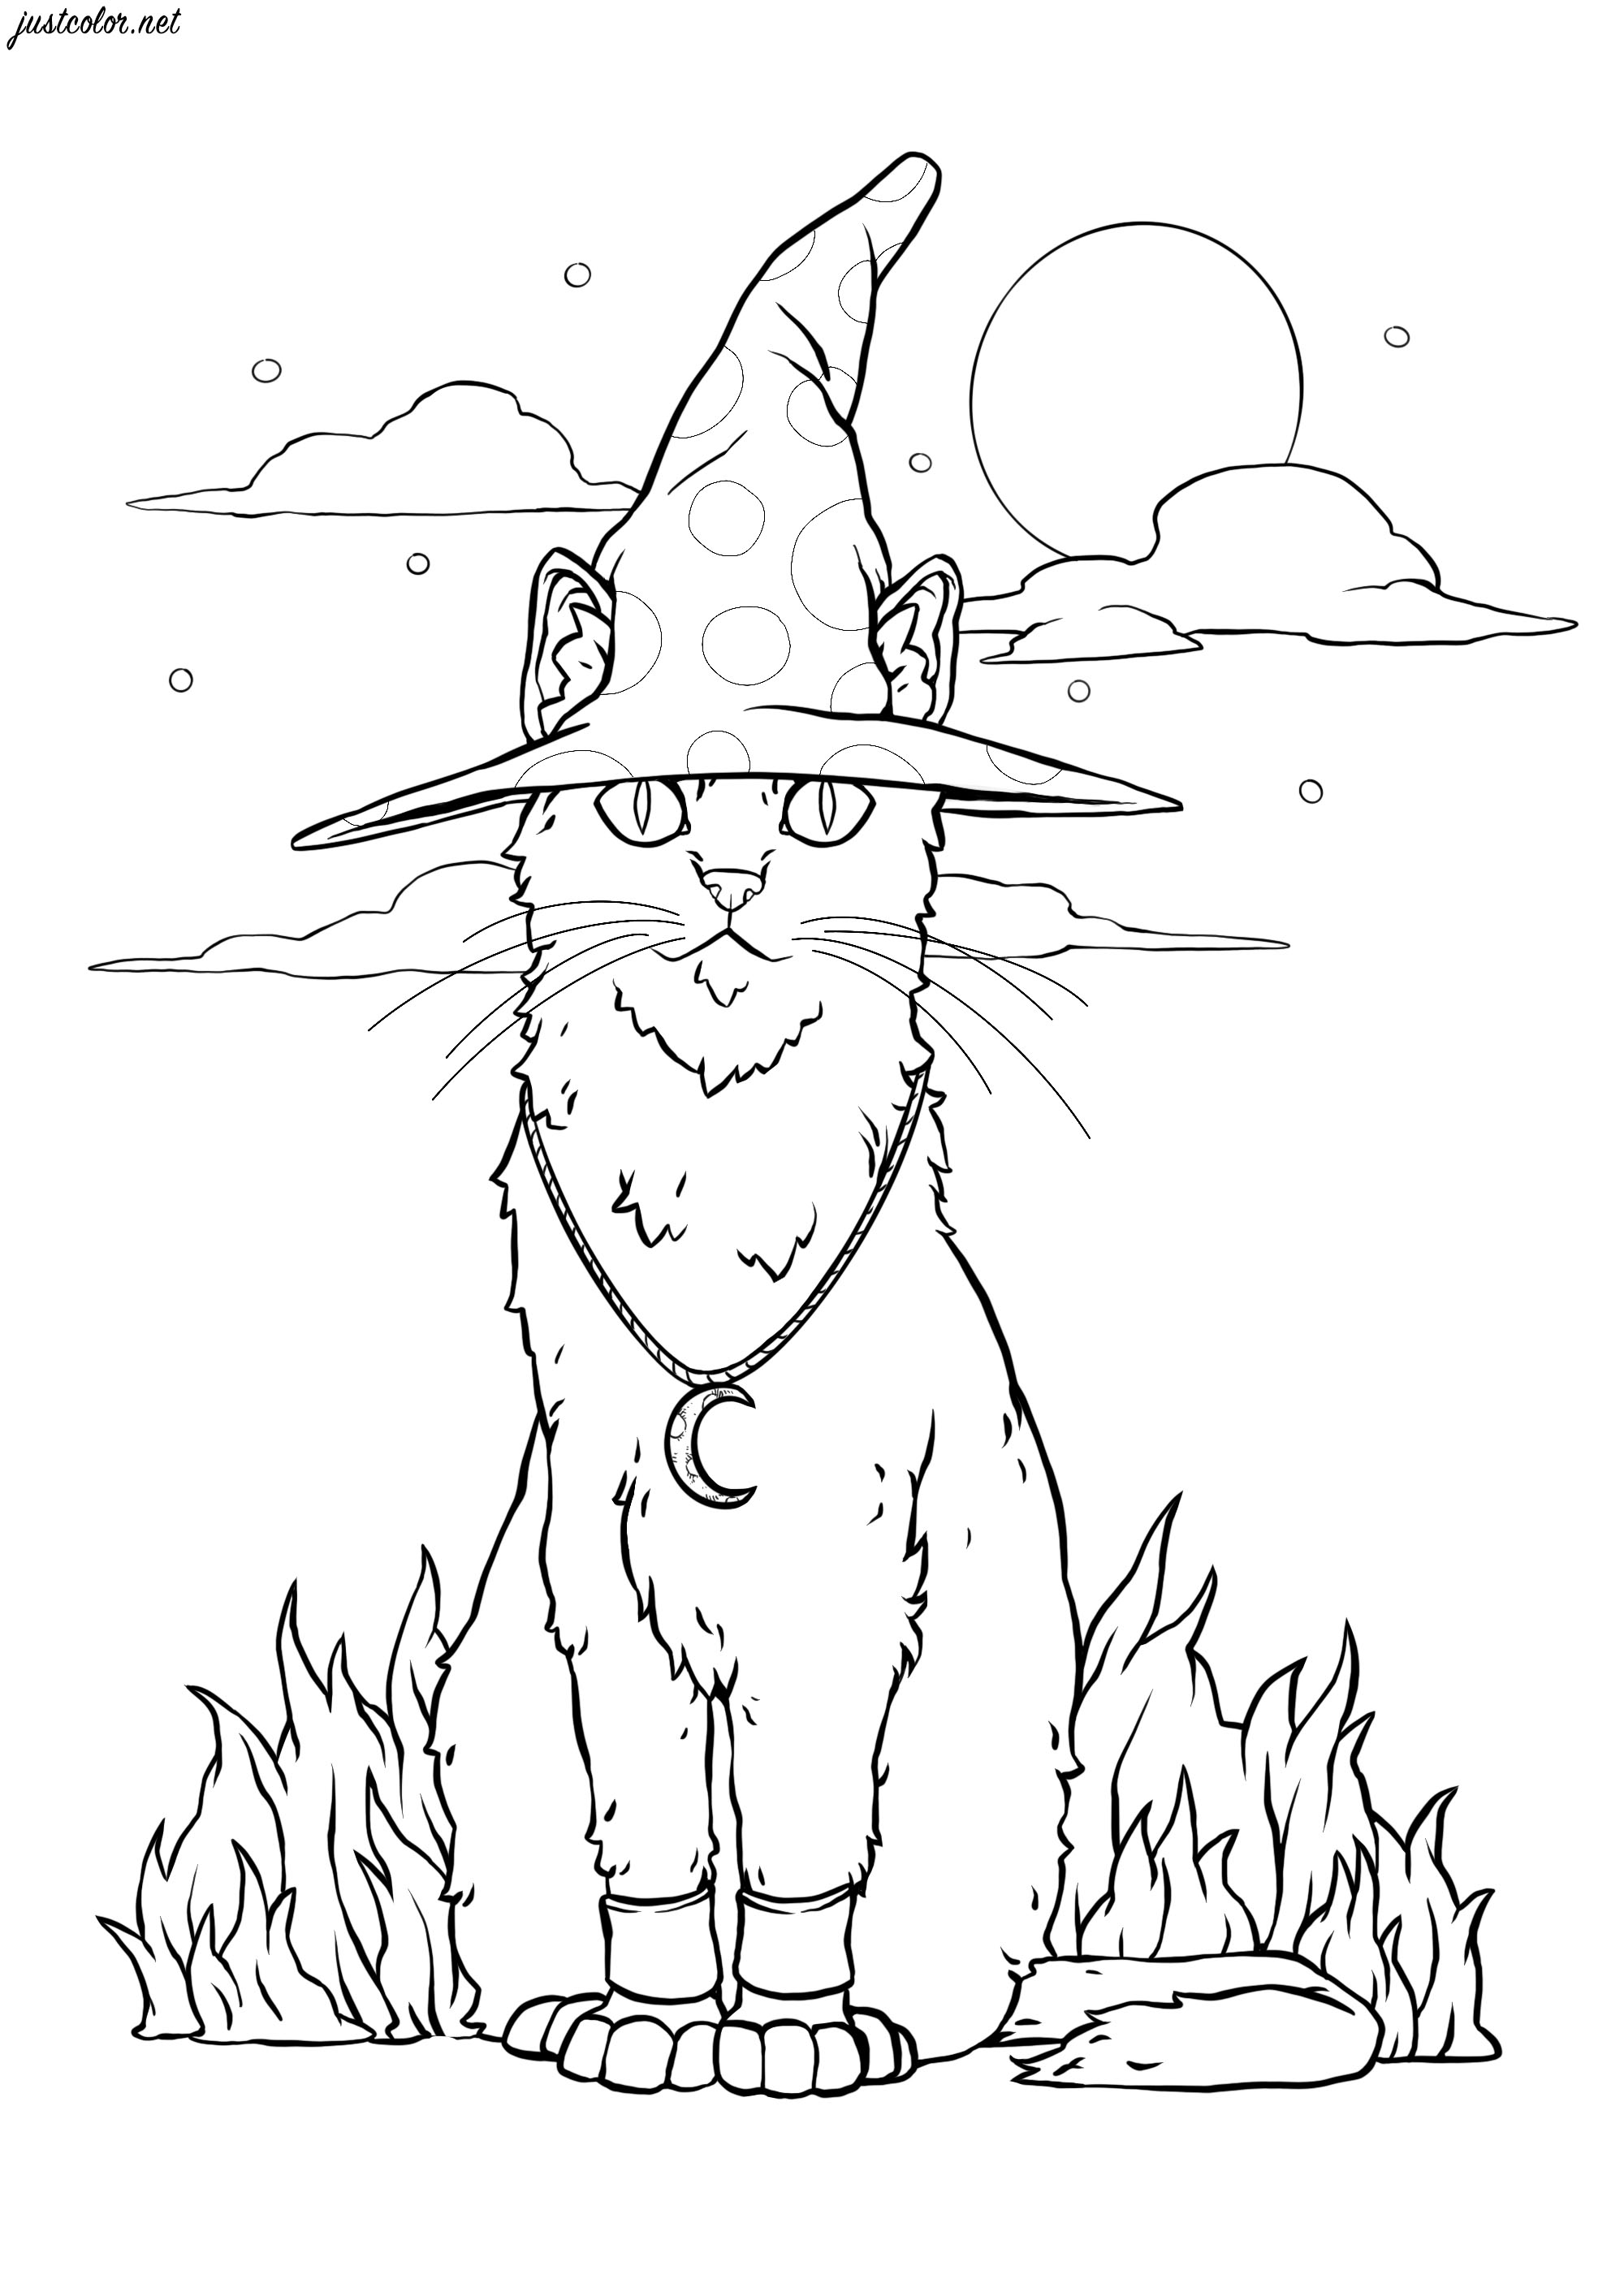 Um feiticeiro transformado num gato travesso ... Um feiticeiro foi transformado num gato... Cabe-te a ti colori-lo de volta à sua forma original!, Artista : SPZ artworks